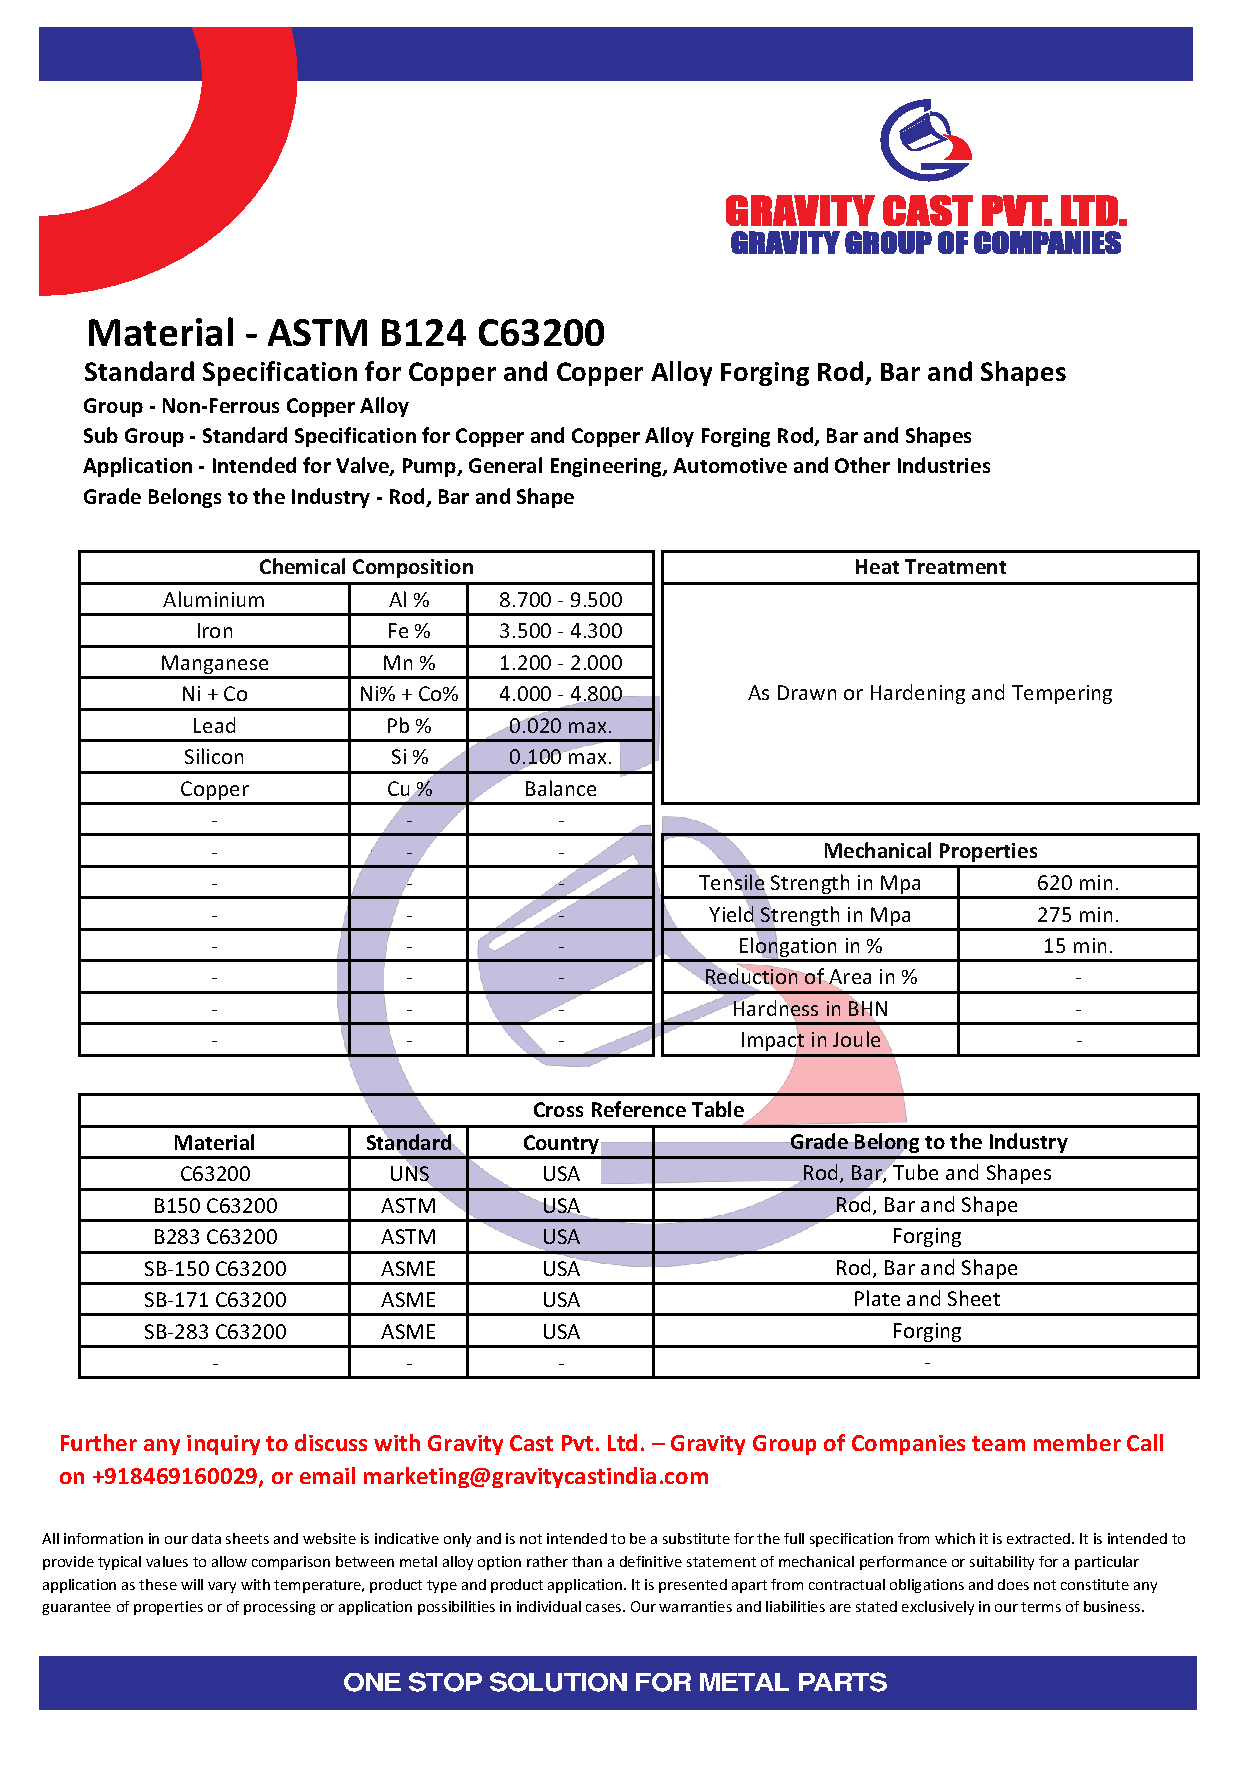 ASTM B124 C63200.pdf